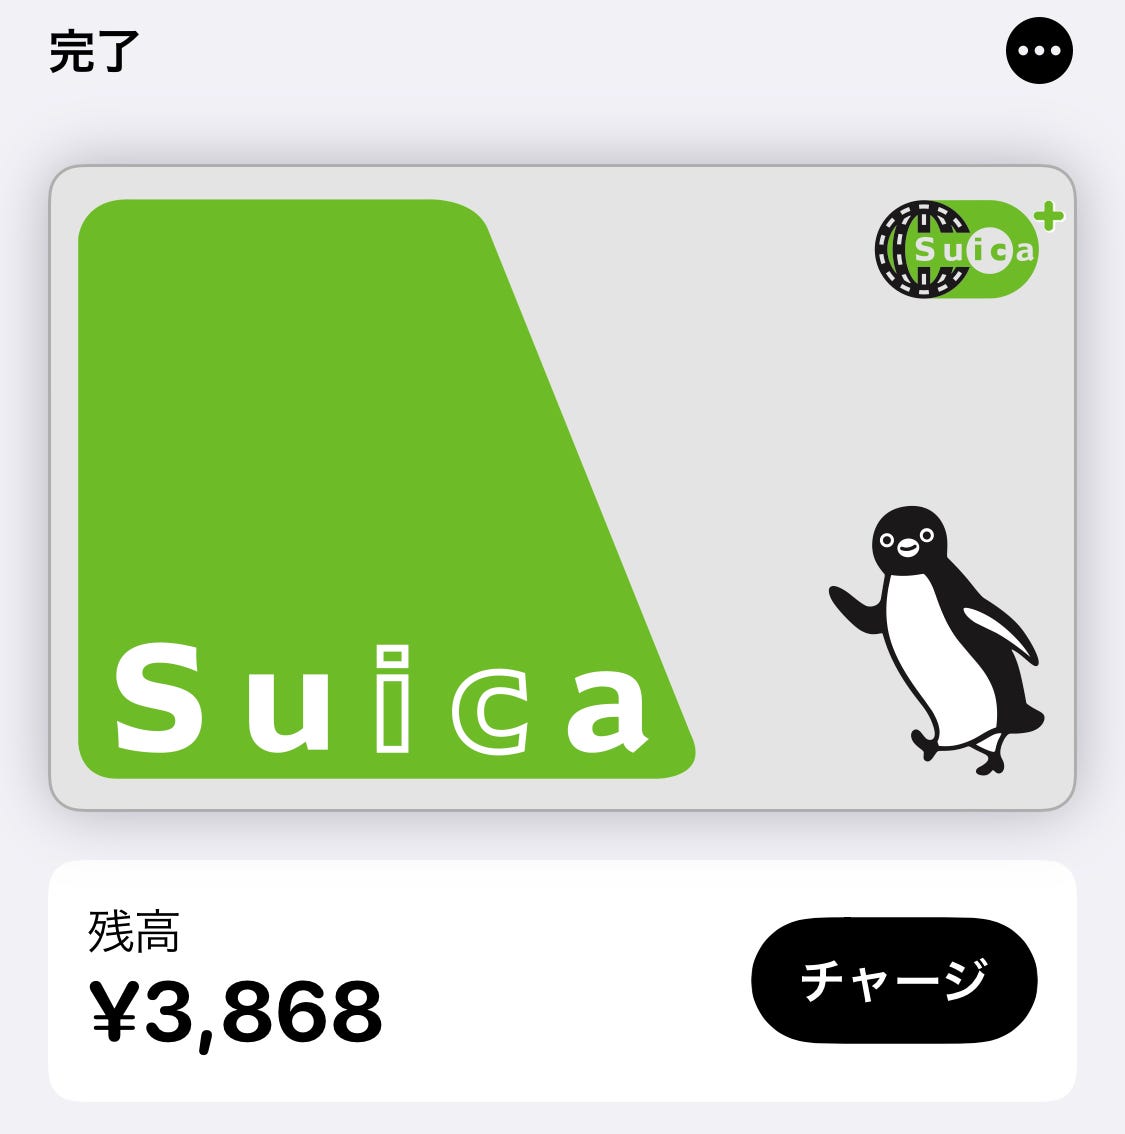 Iphone 11 Pro で Apple Pay で Suica を使い始めた By V Medium